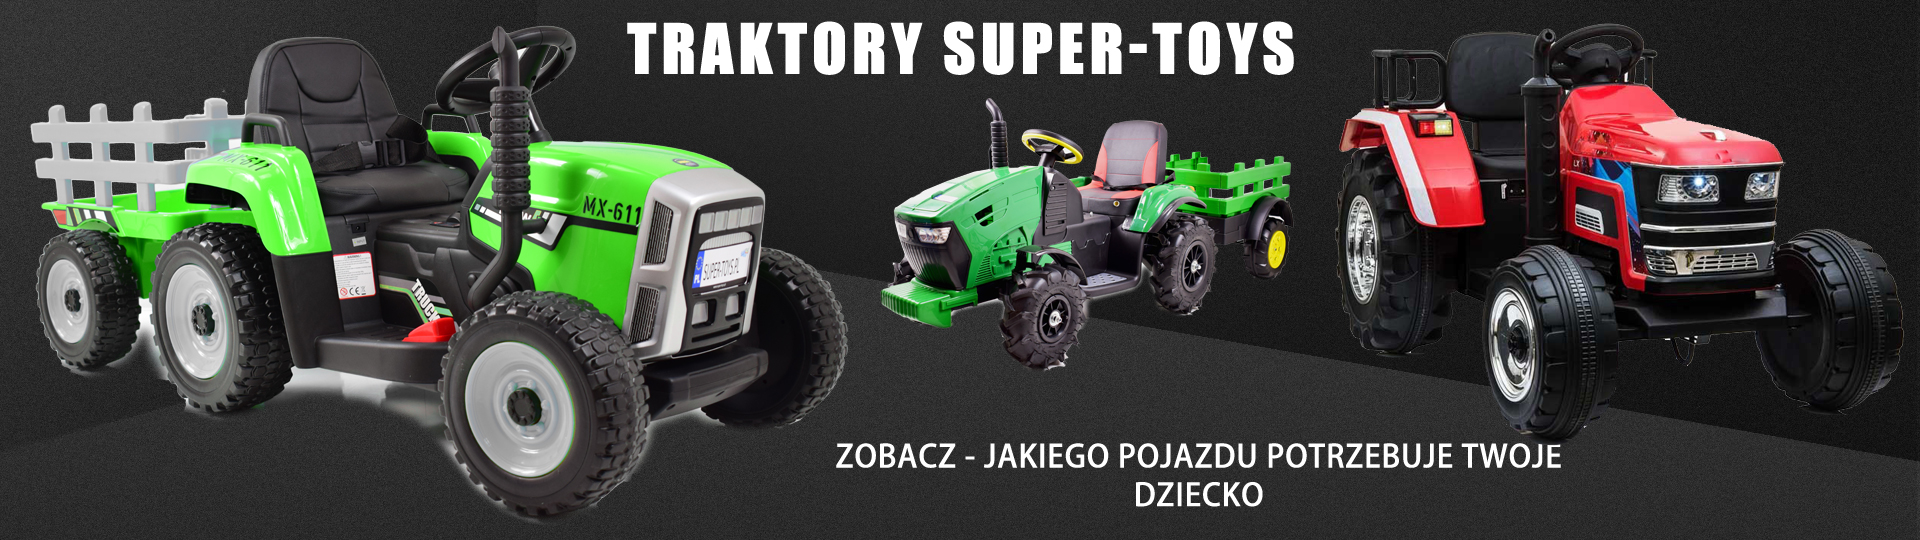 Traktory super-toys